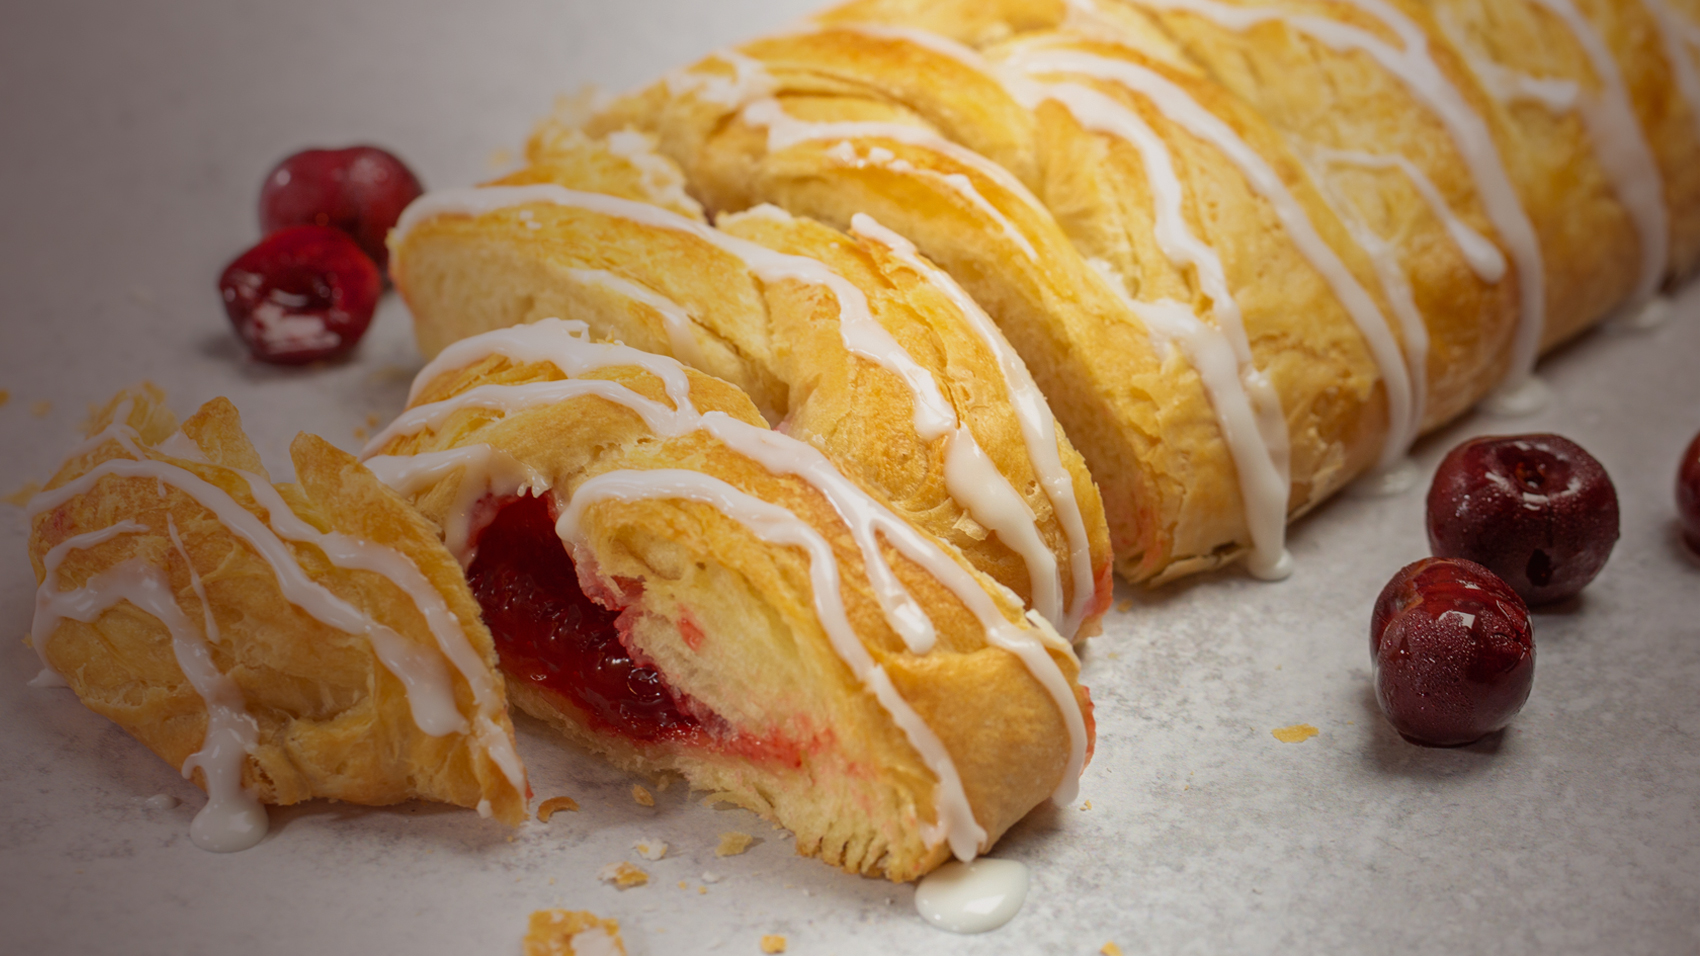 Cherry Braided Pastry